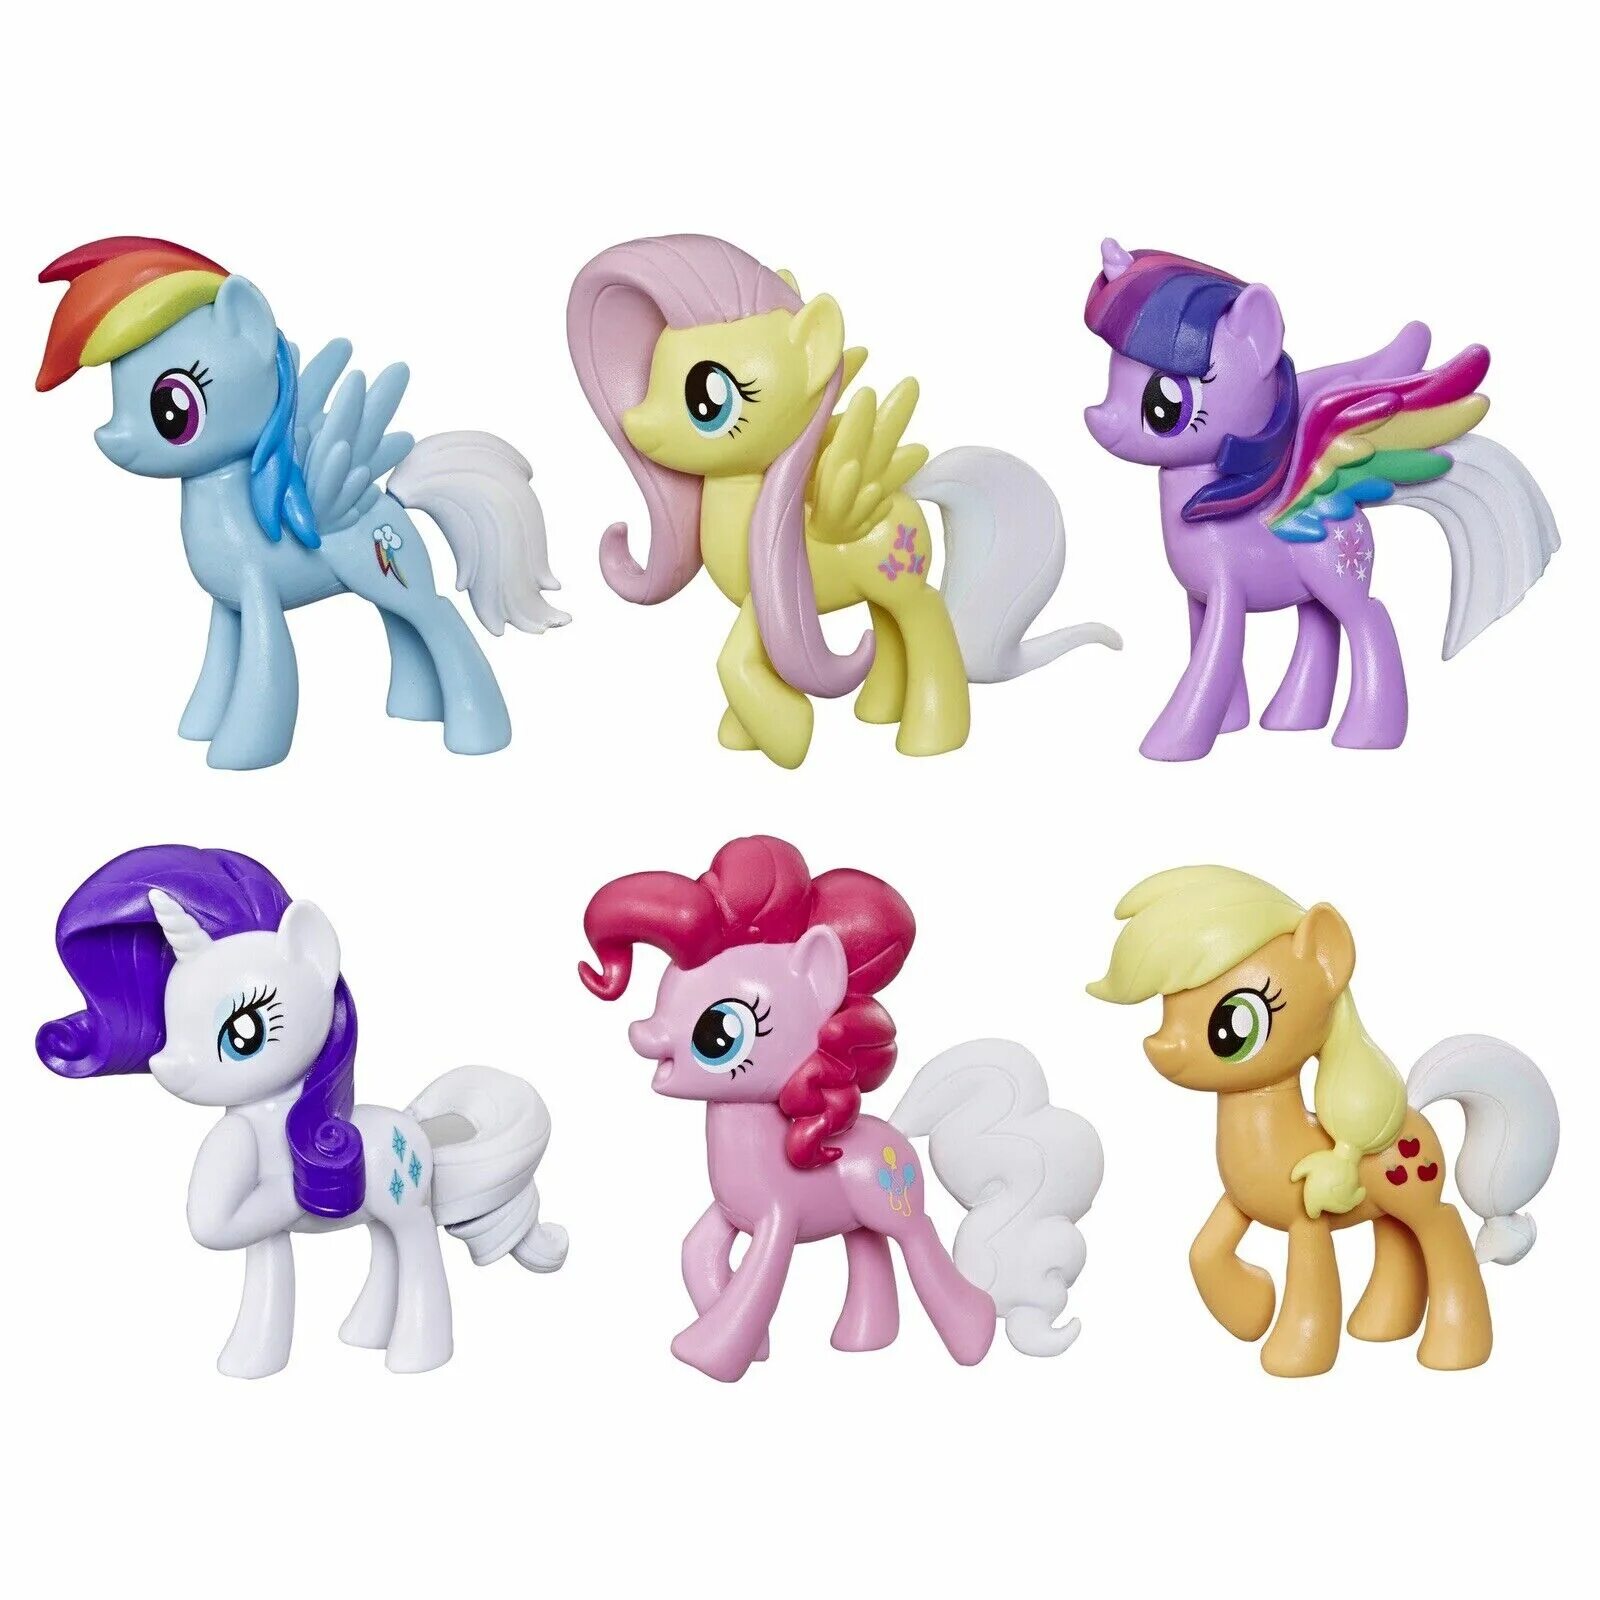 Фигурки литл пони. My little Pony Hasbro 6 шт. Hasbro my little Pony Toy Rainbow. My little poni набор 6 пони. Rainbow Road trip my little Pony набор.